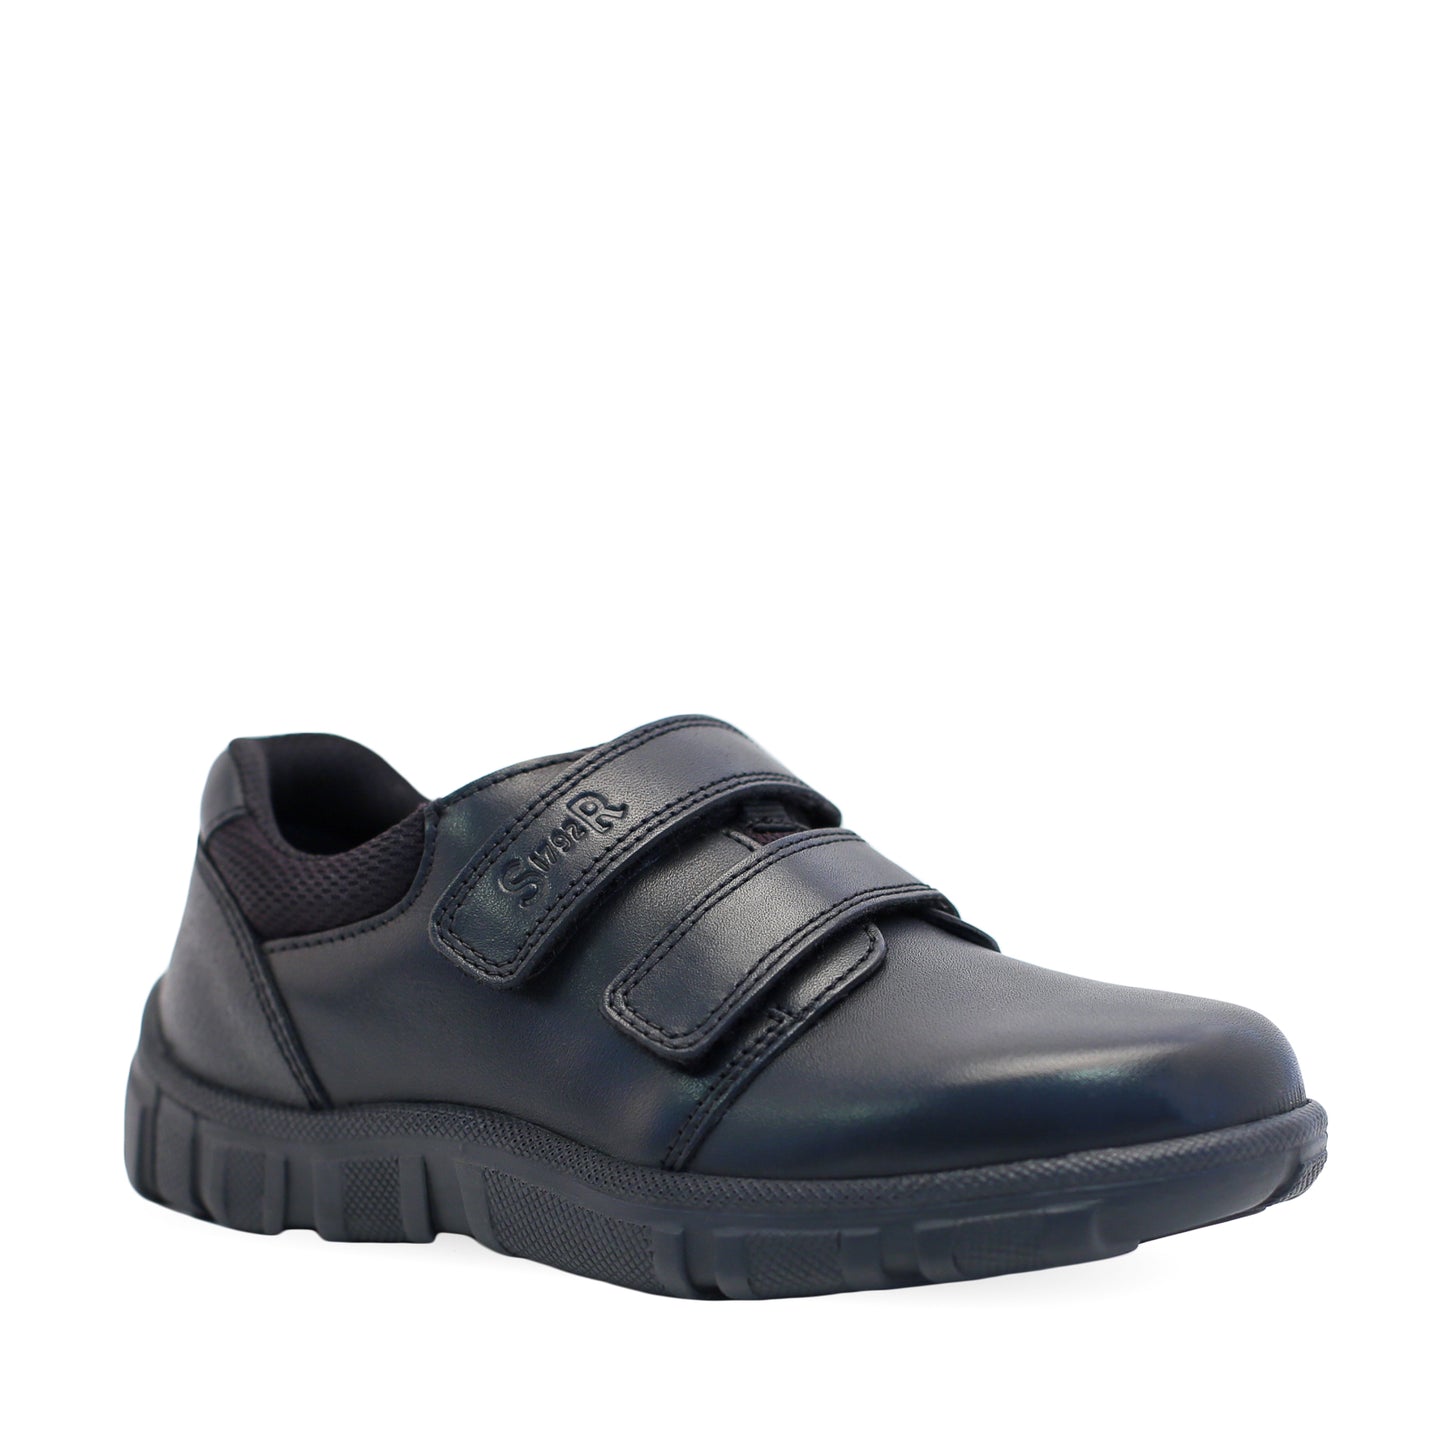 Origin Black Leather Boy's School Shoe